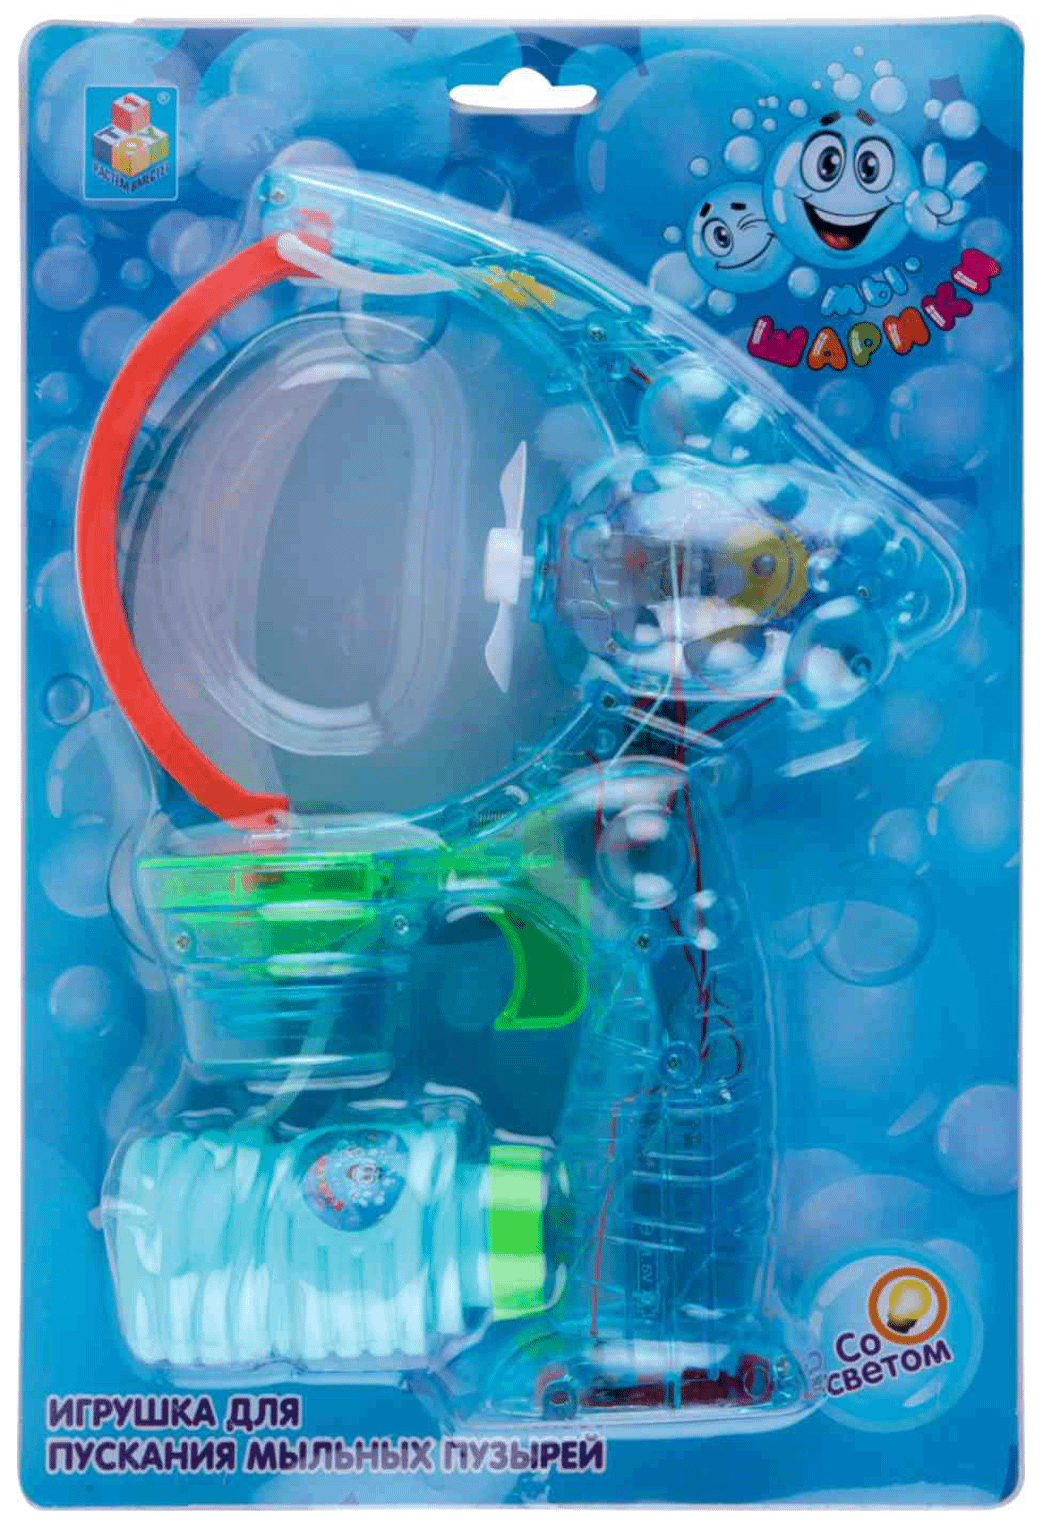 Игрушка для пускания мыльных пузырей 1toy Lab Мы шарики со светом 70 мл игрушка для пускания мыльных пузырей 1toy мы шарики футбольный мяч